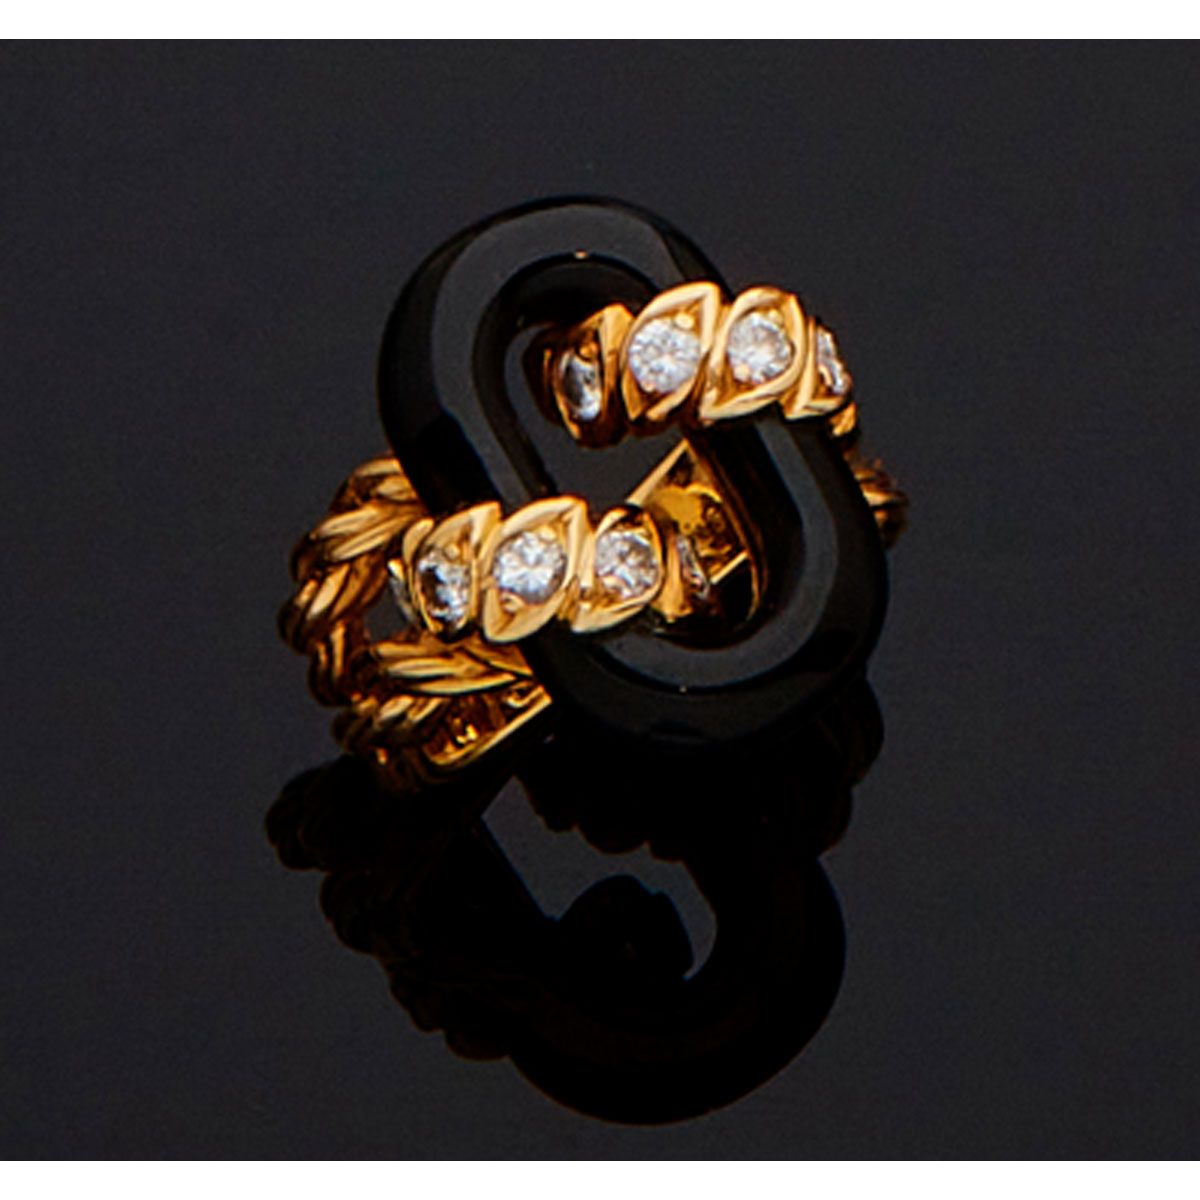 Null Van Cleef & Arpels.

18K黄金戒指，镶嵌有椭圆形黑玛瑙元素，由两条镶有明亮式切割钻石的带子固定。法国作品，约1970年，有VCA&hellip;